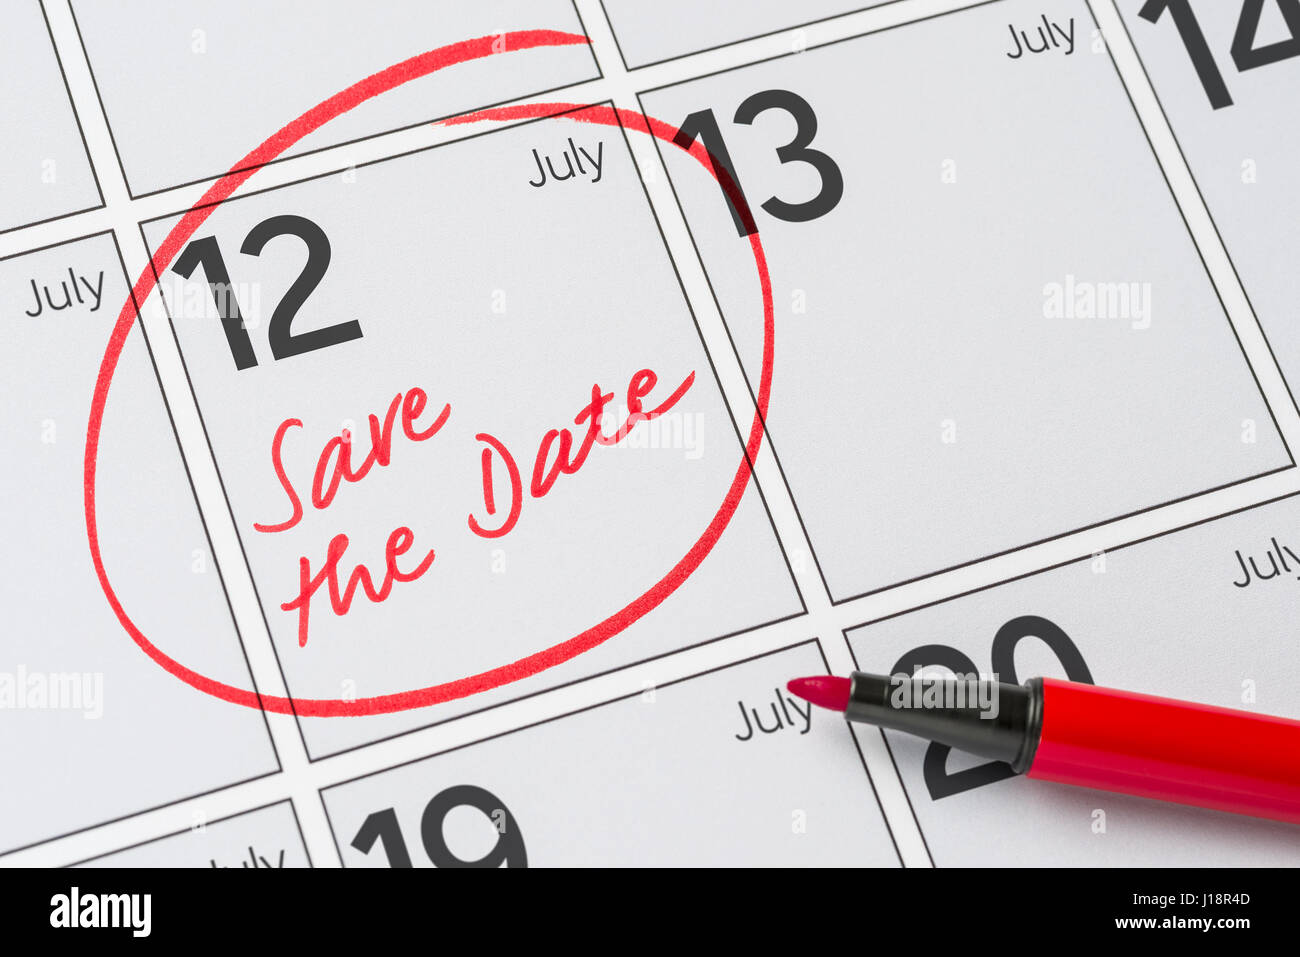 Enregistrer la date inscrite sur un calendrier - Juillet 12 Banque D'Images